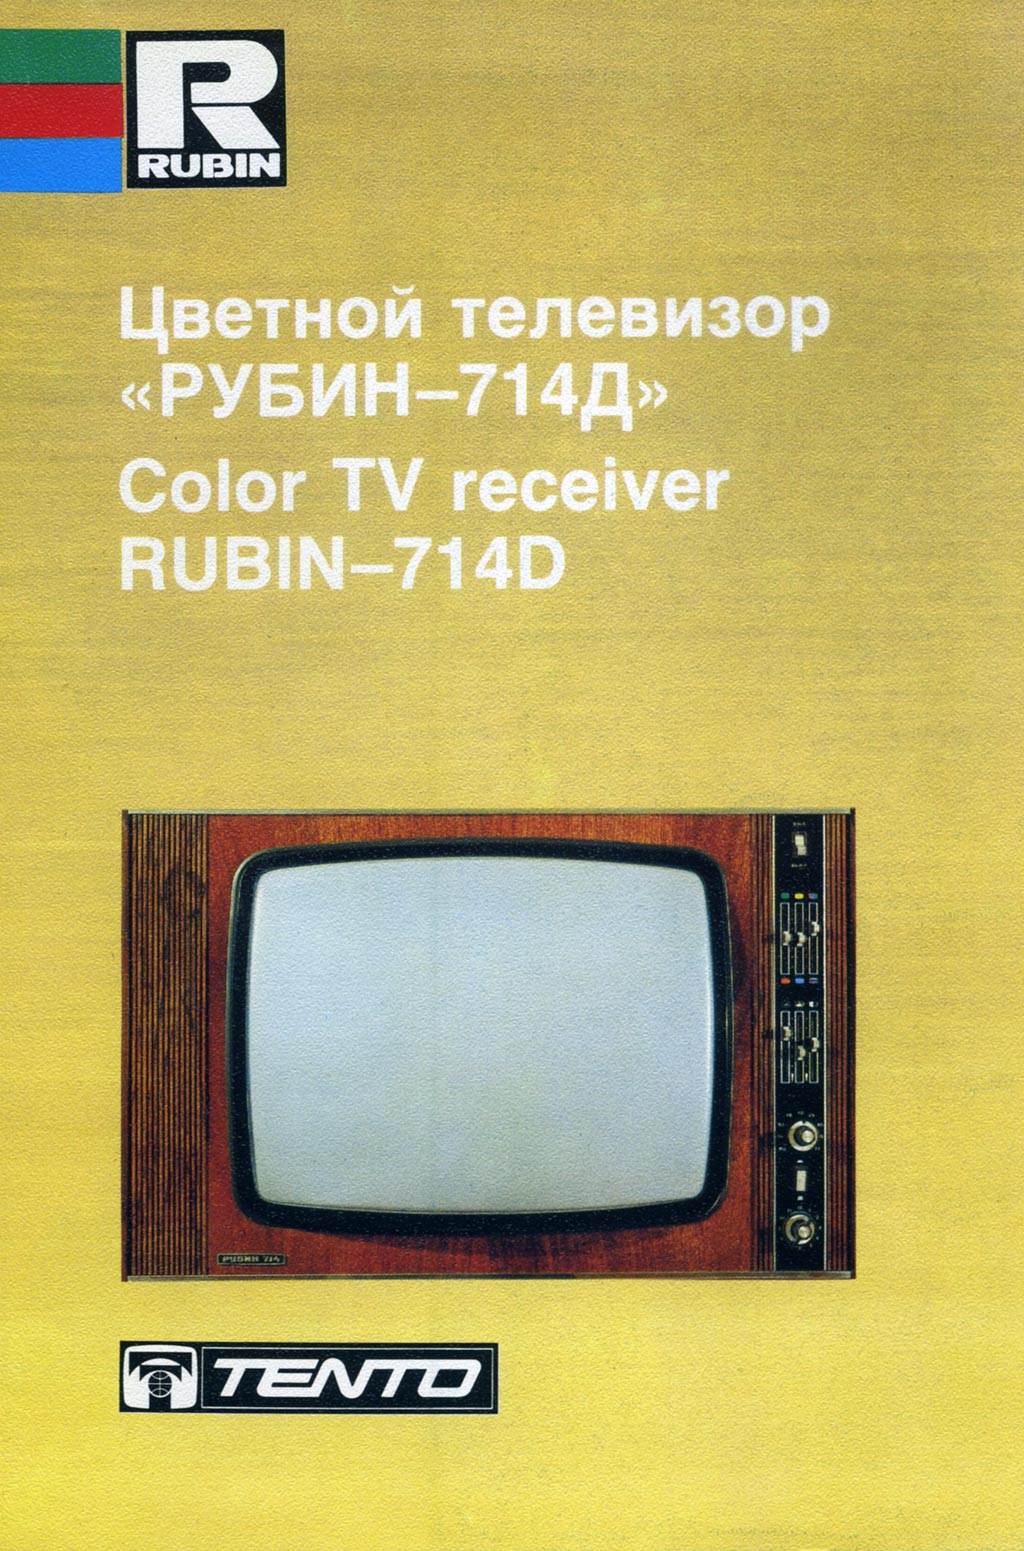 Рубин-714/Д